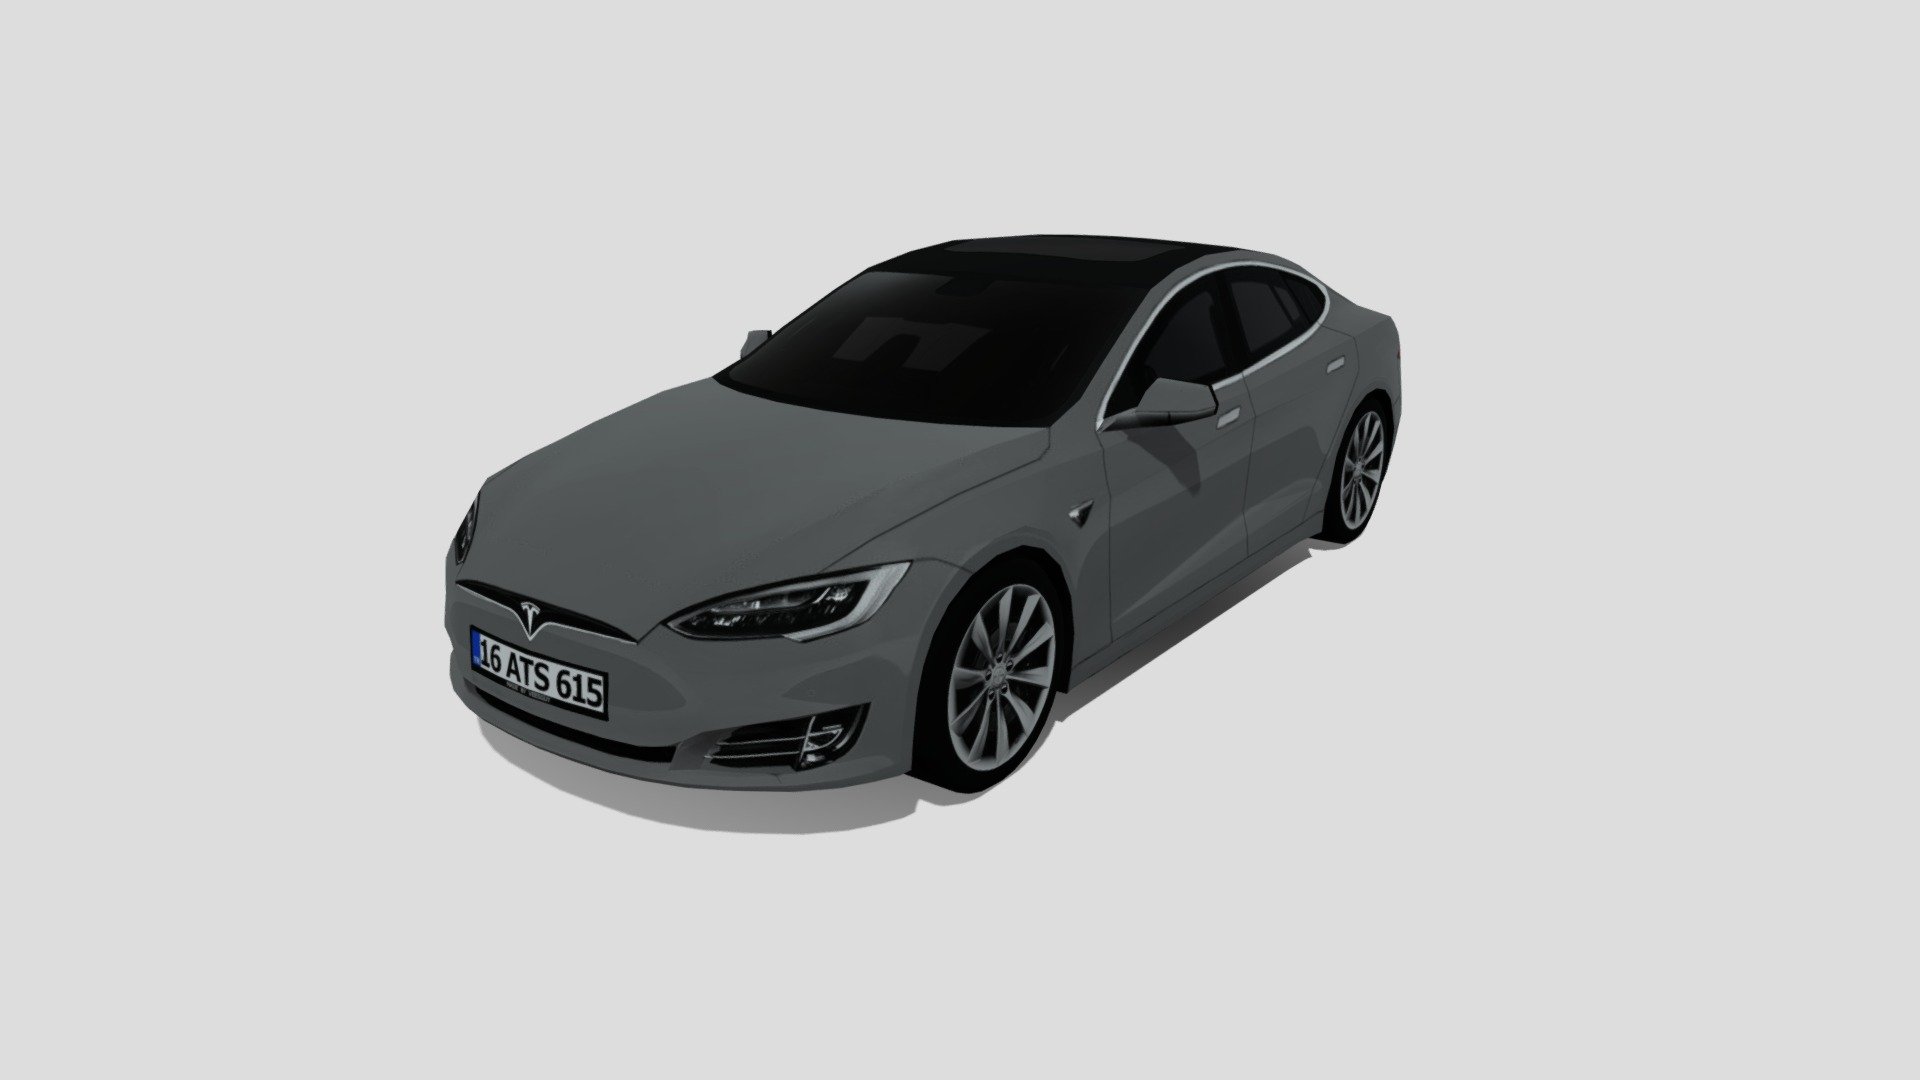 2020 Tesla Model S by VeesGuy

Tris: 3420
Texture: 1024x1024 - 2020 Tesla Model S - 3D model by VeesGuy 3d model